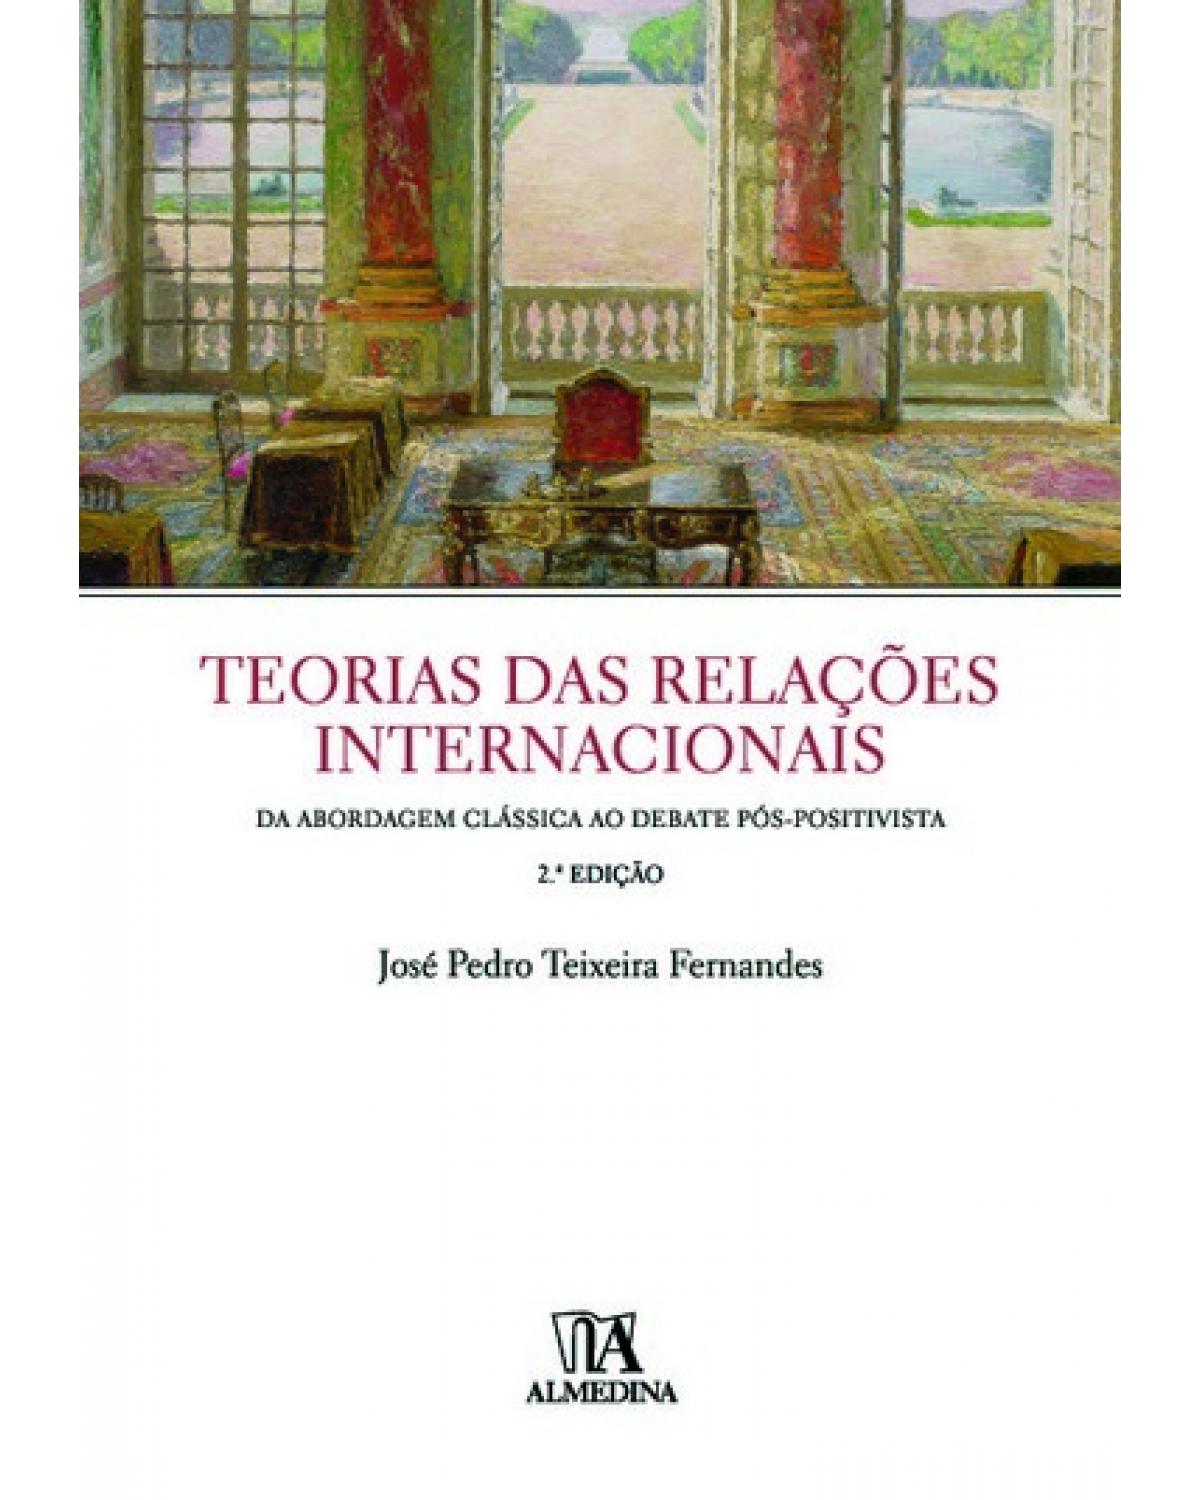 Teorias das relações internacionais - da abordagem clássica ao debate pós-positivista - 2ª Edição | 2011